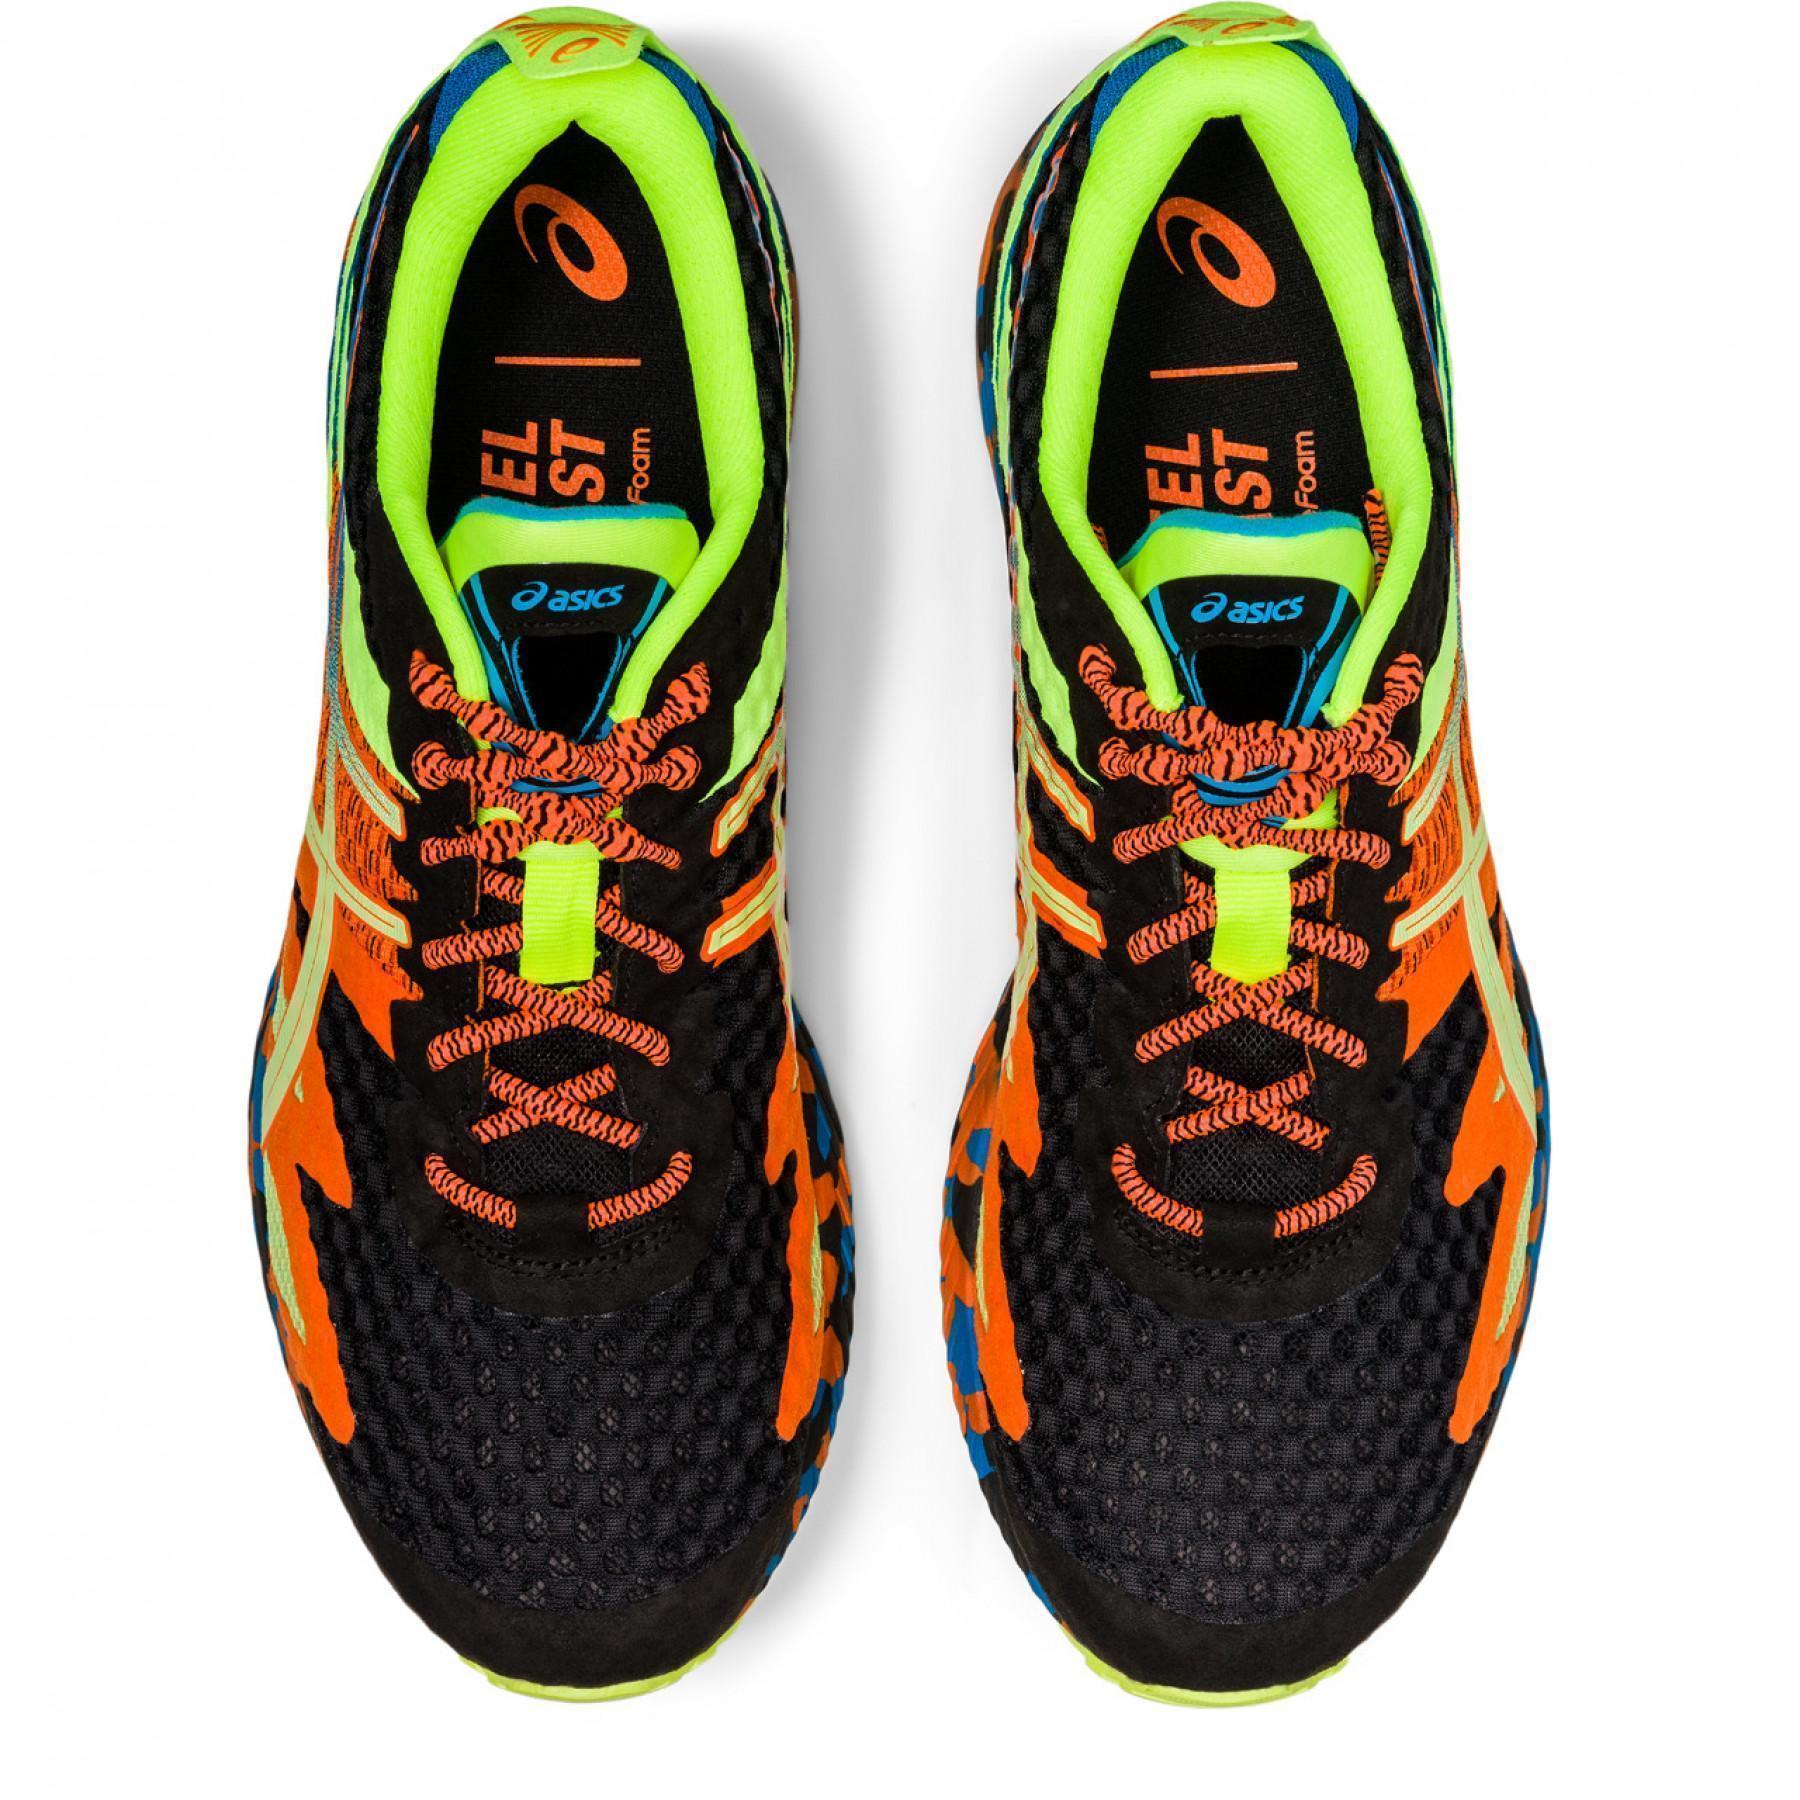 Chaussures de running Asics Gel-Noosa Tri 12